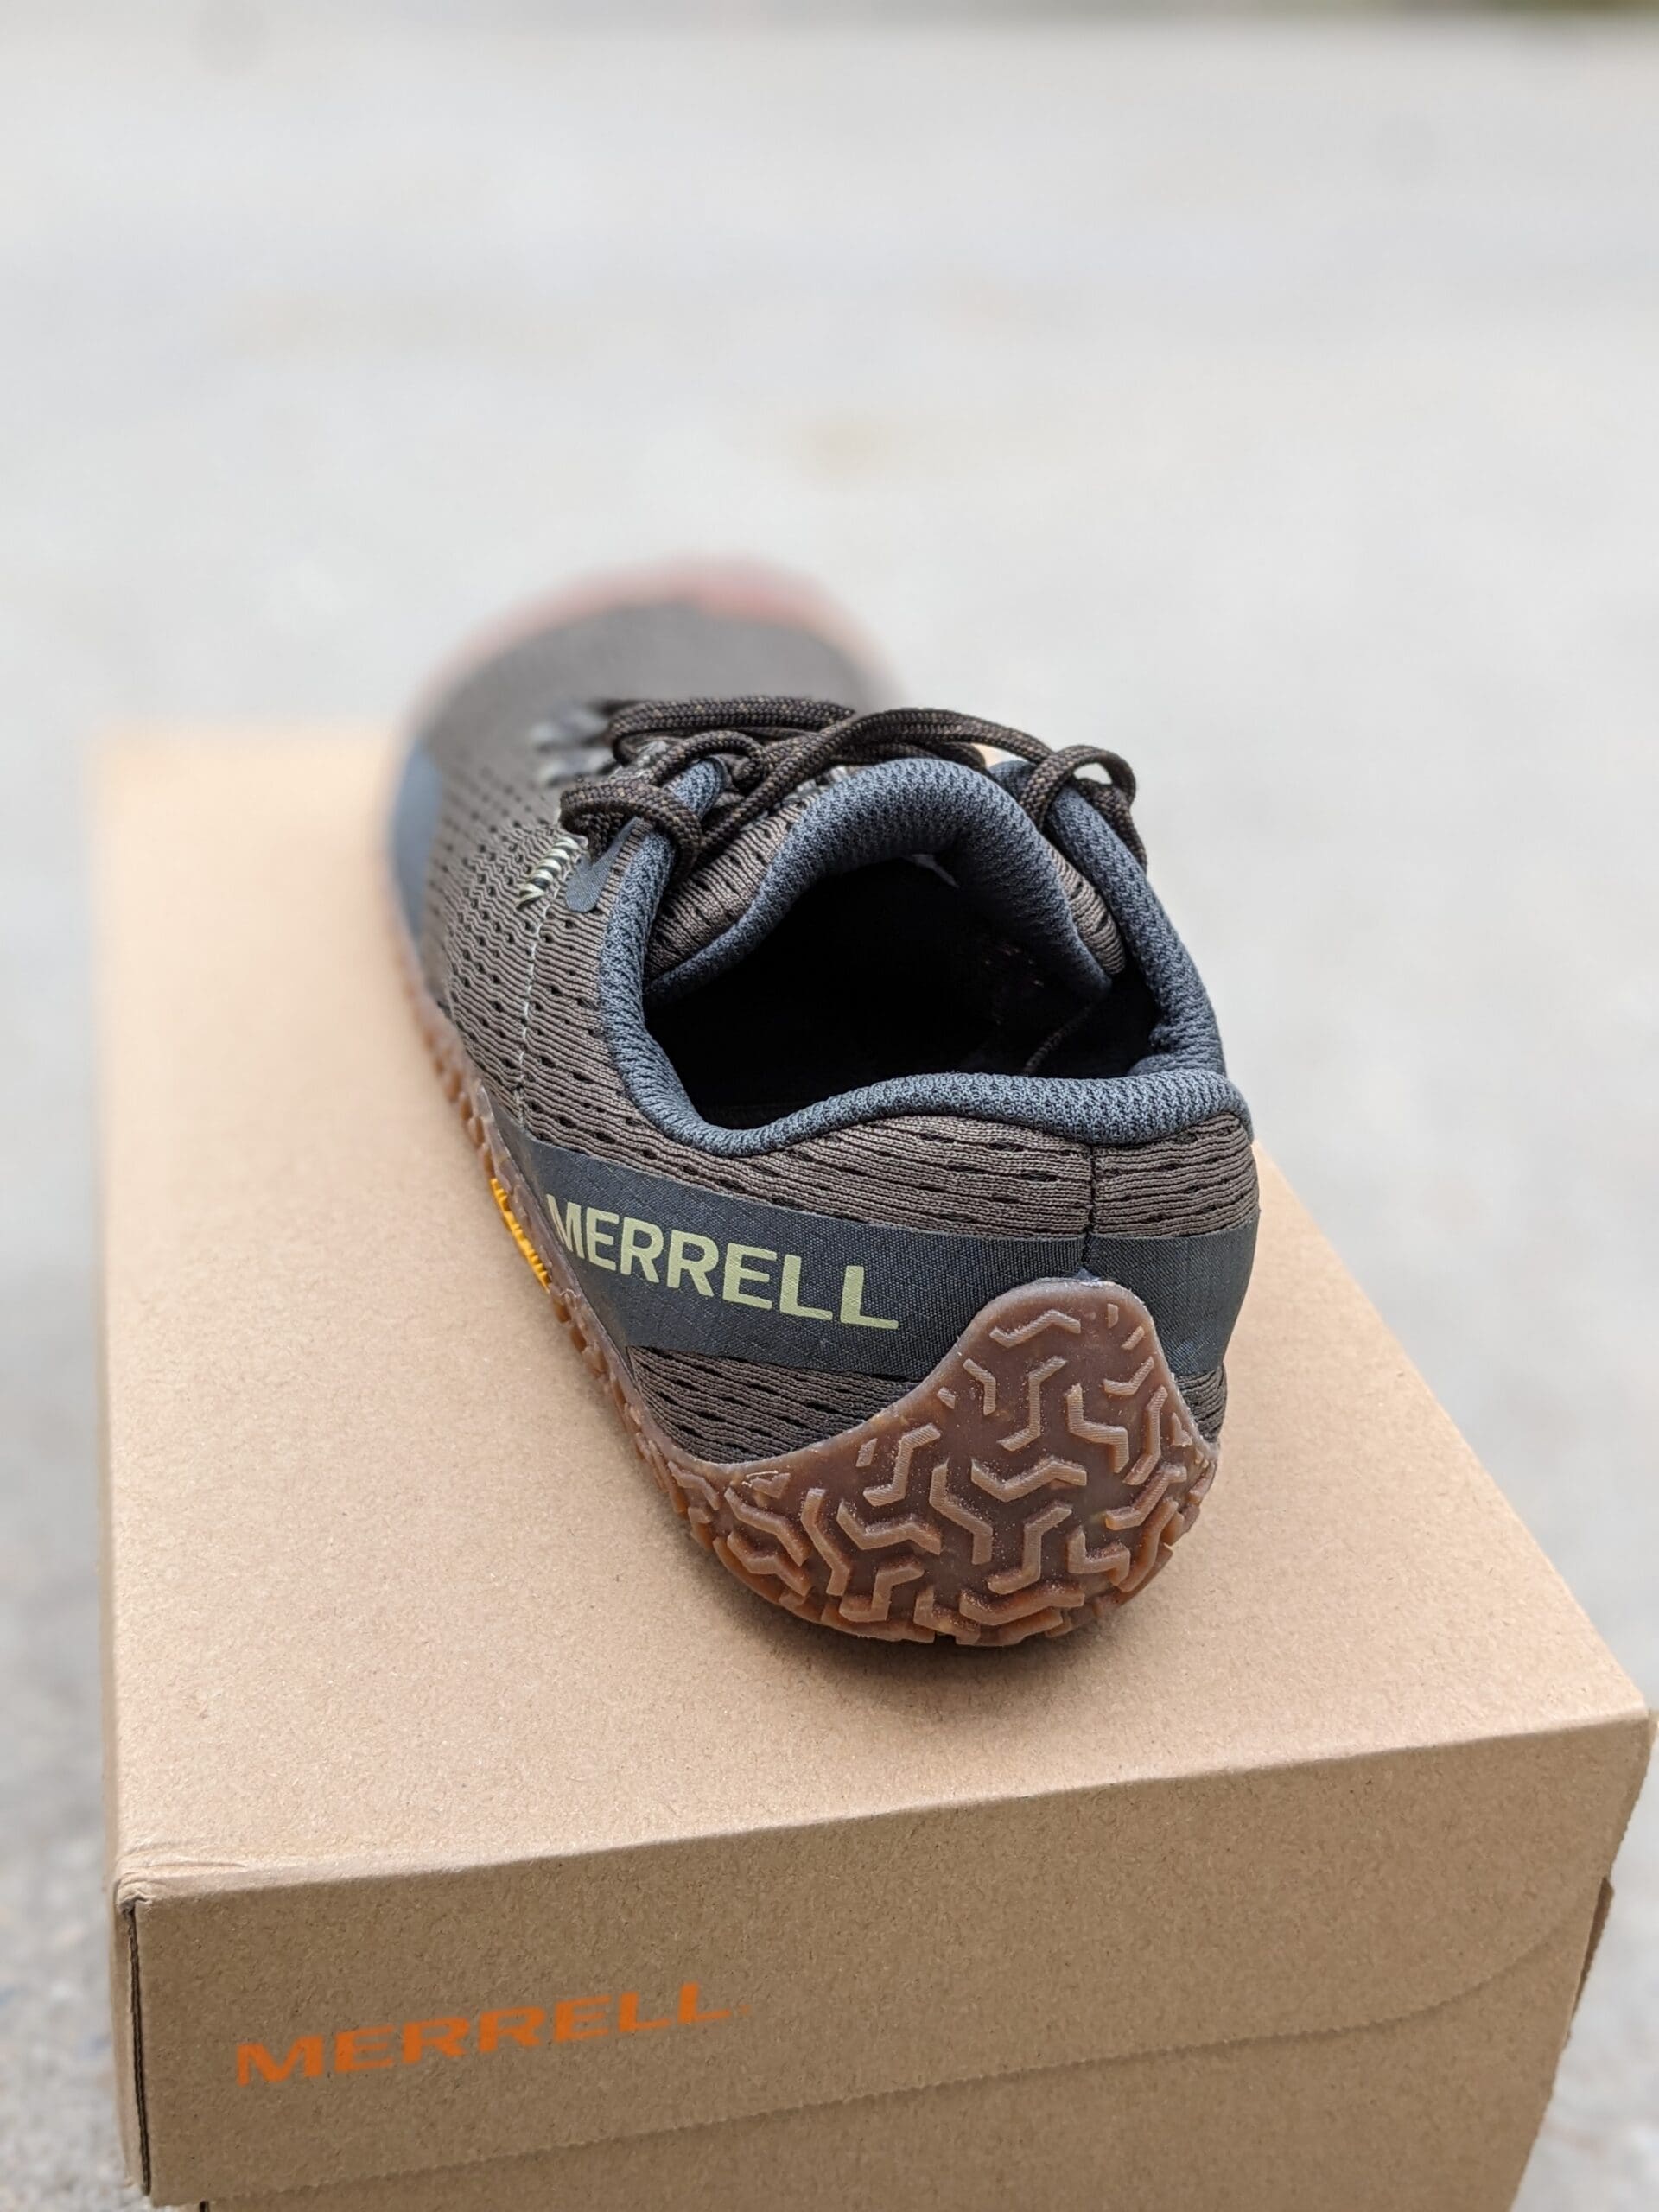 Merrell Vapor Glove 6 heel one